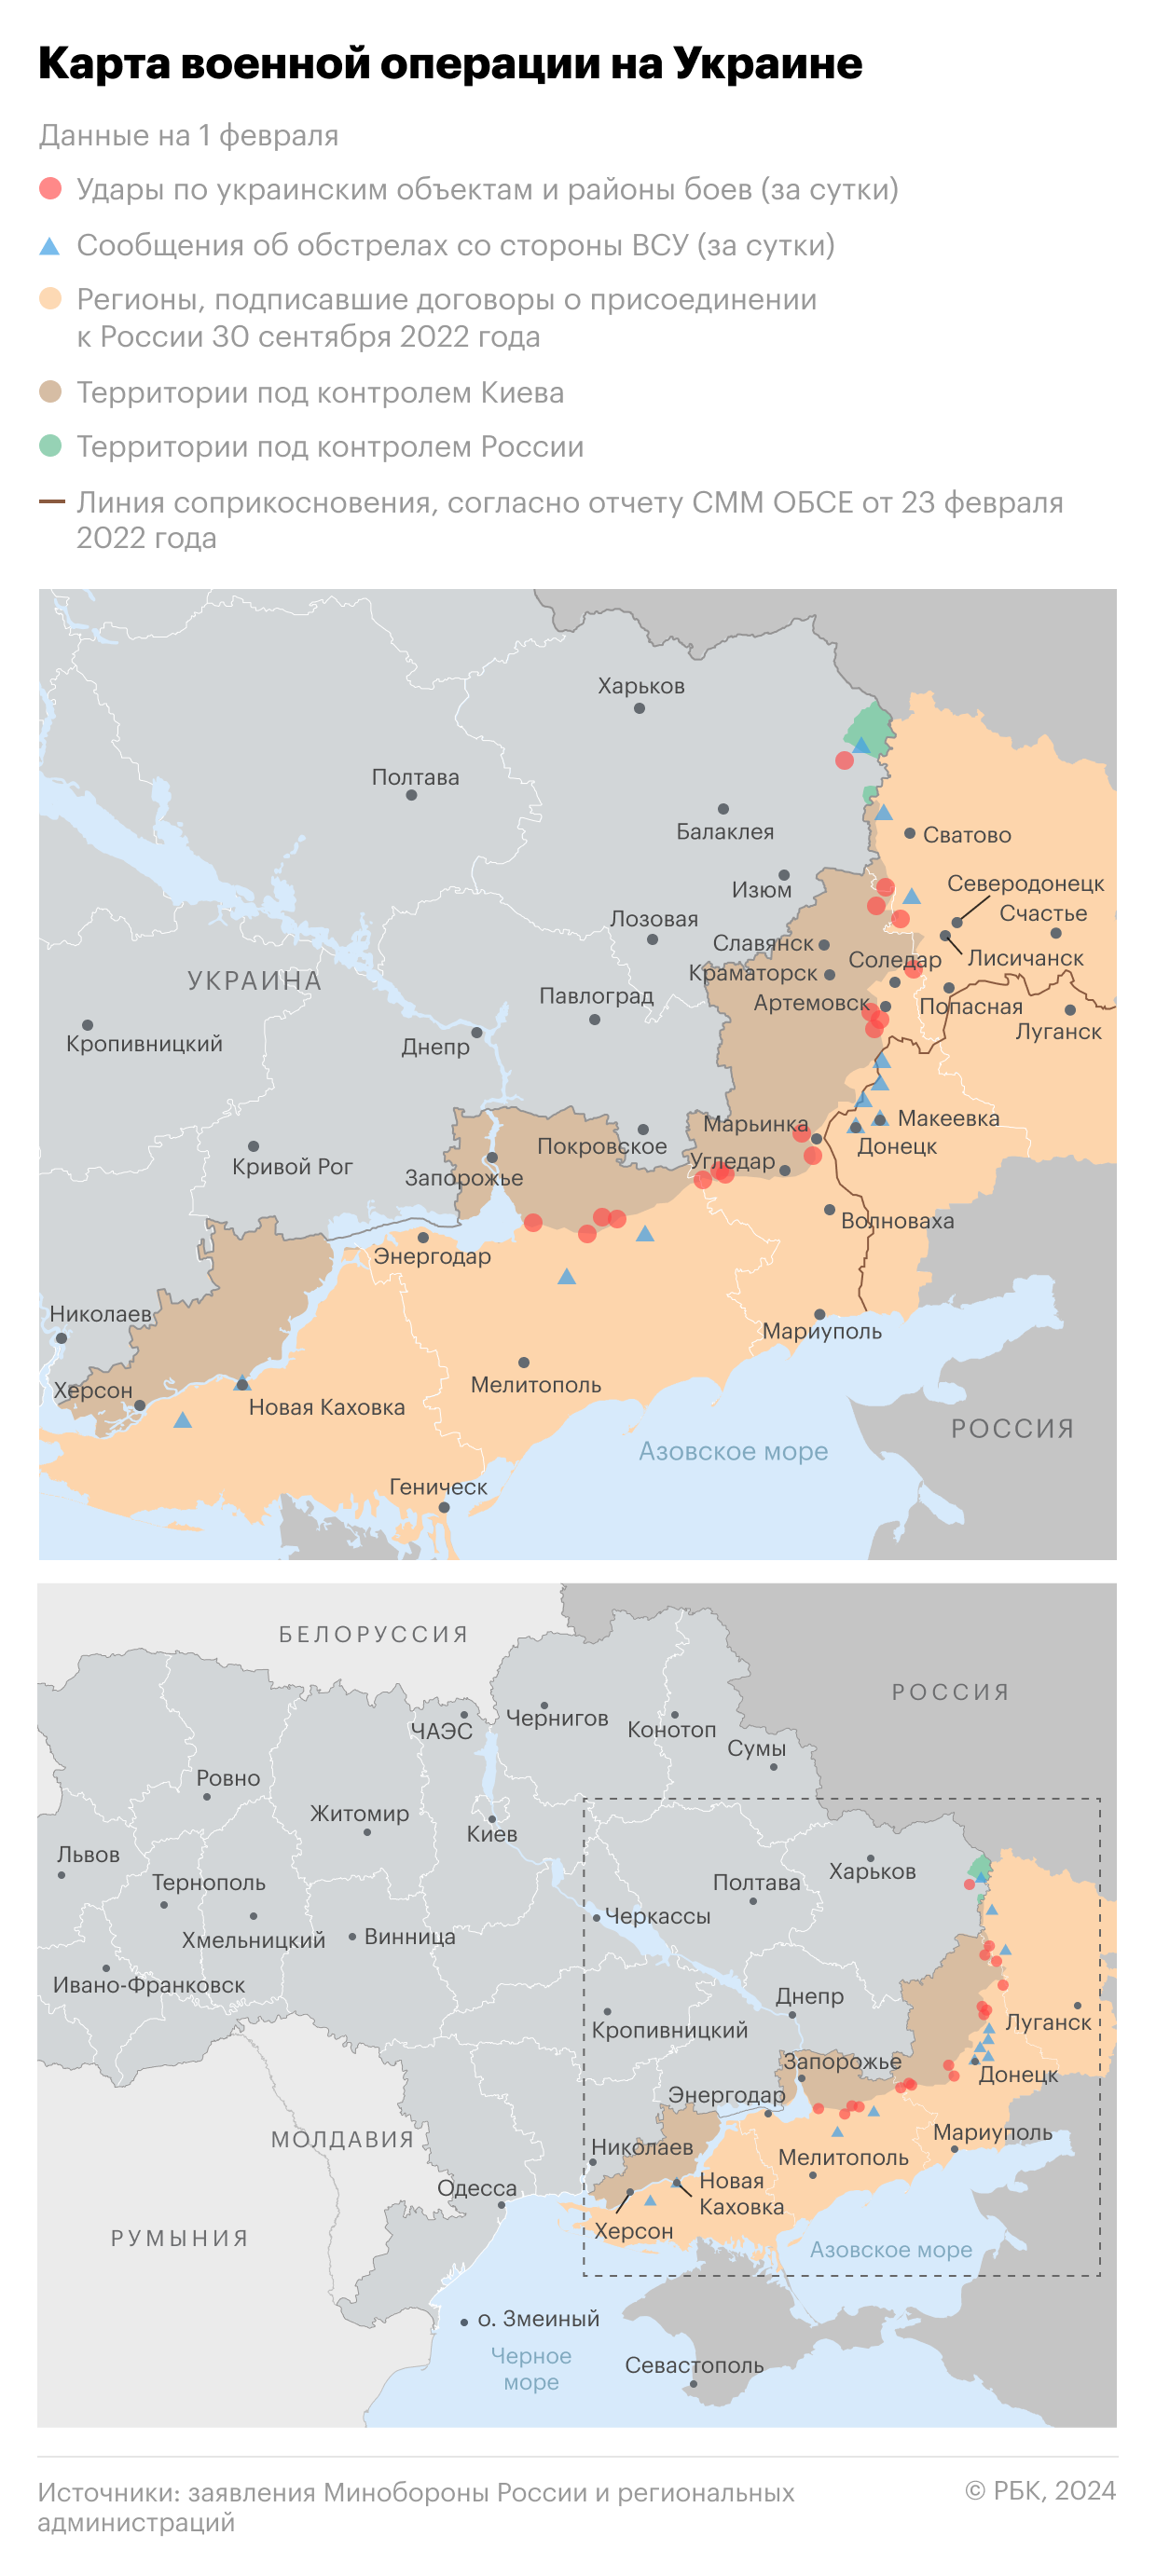 Военная операция на Украине. Карта на 1 февраля